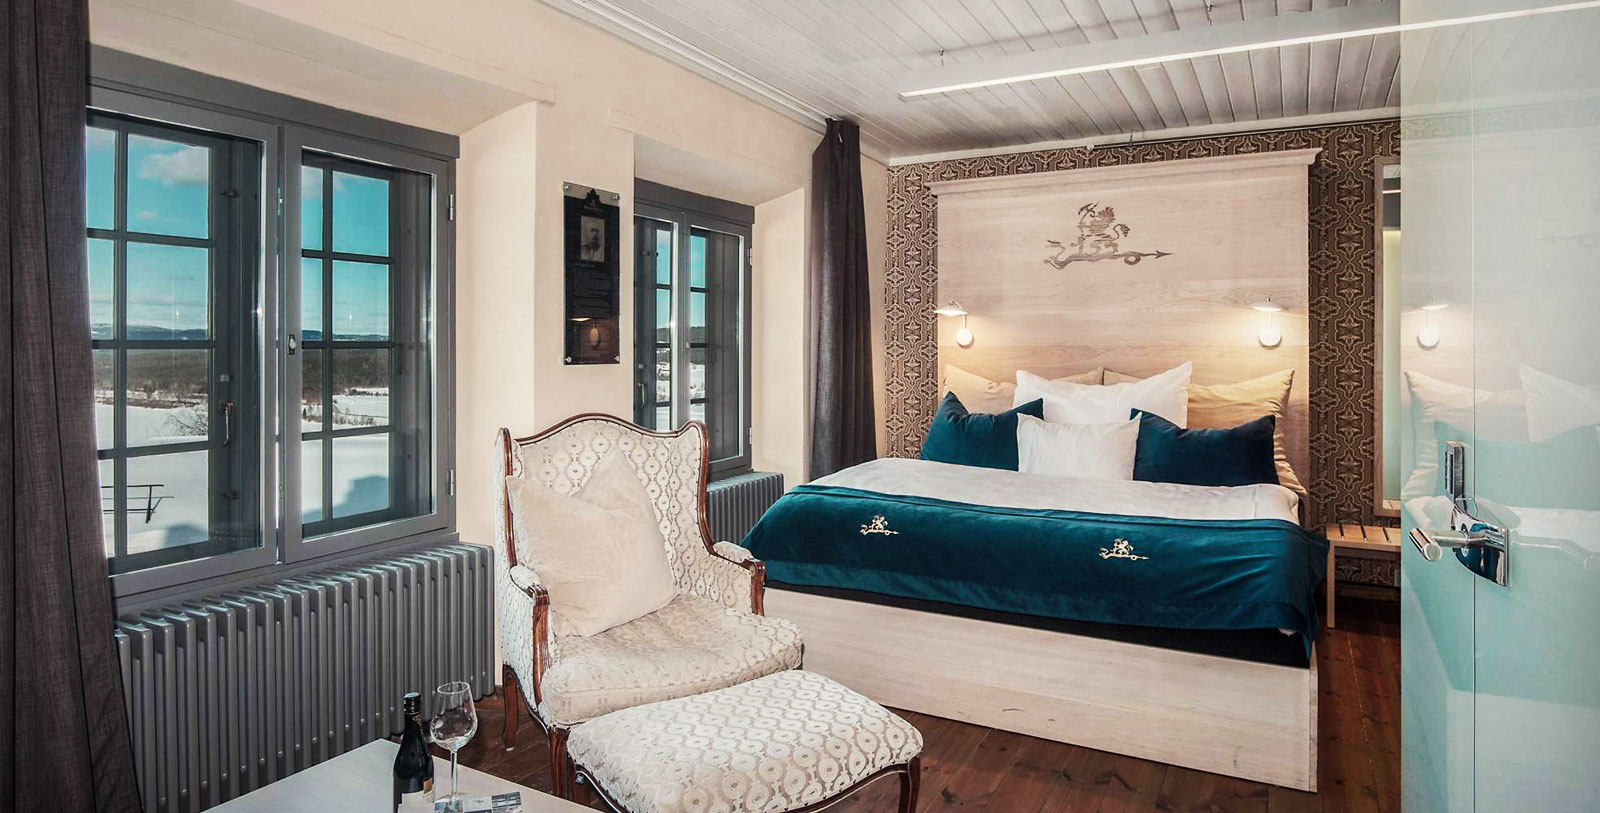 Image of guestroom at Festningen Castle Hotel & Resort, 1673, Member of Historic Hotels Worldwide, in Kongsvinger, Norway, Accommodations